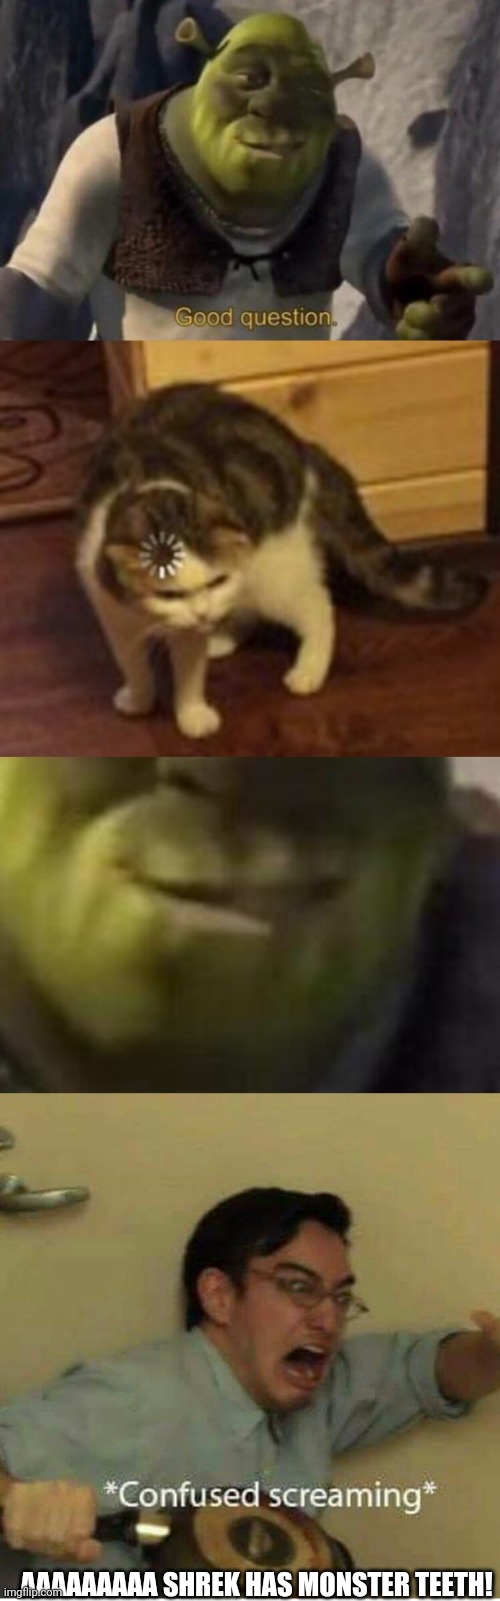 Shrek is a monster | AAAAAAAAA SHREK HAS MONSTER TEETH! | image tagged in shrek good question,loading cat,confused screaming | made w/ Imgflip meme maker